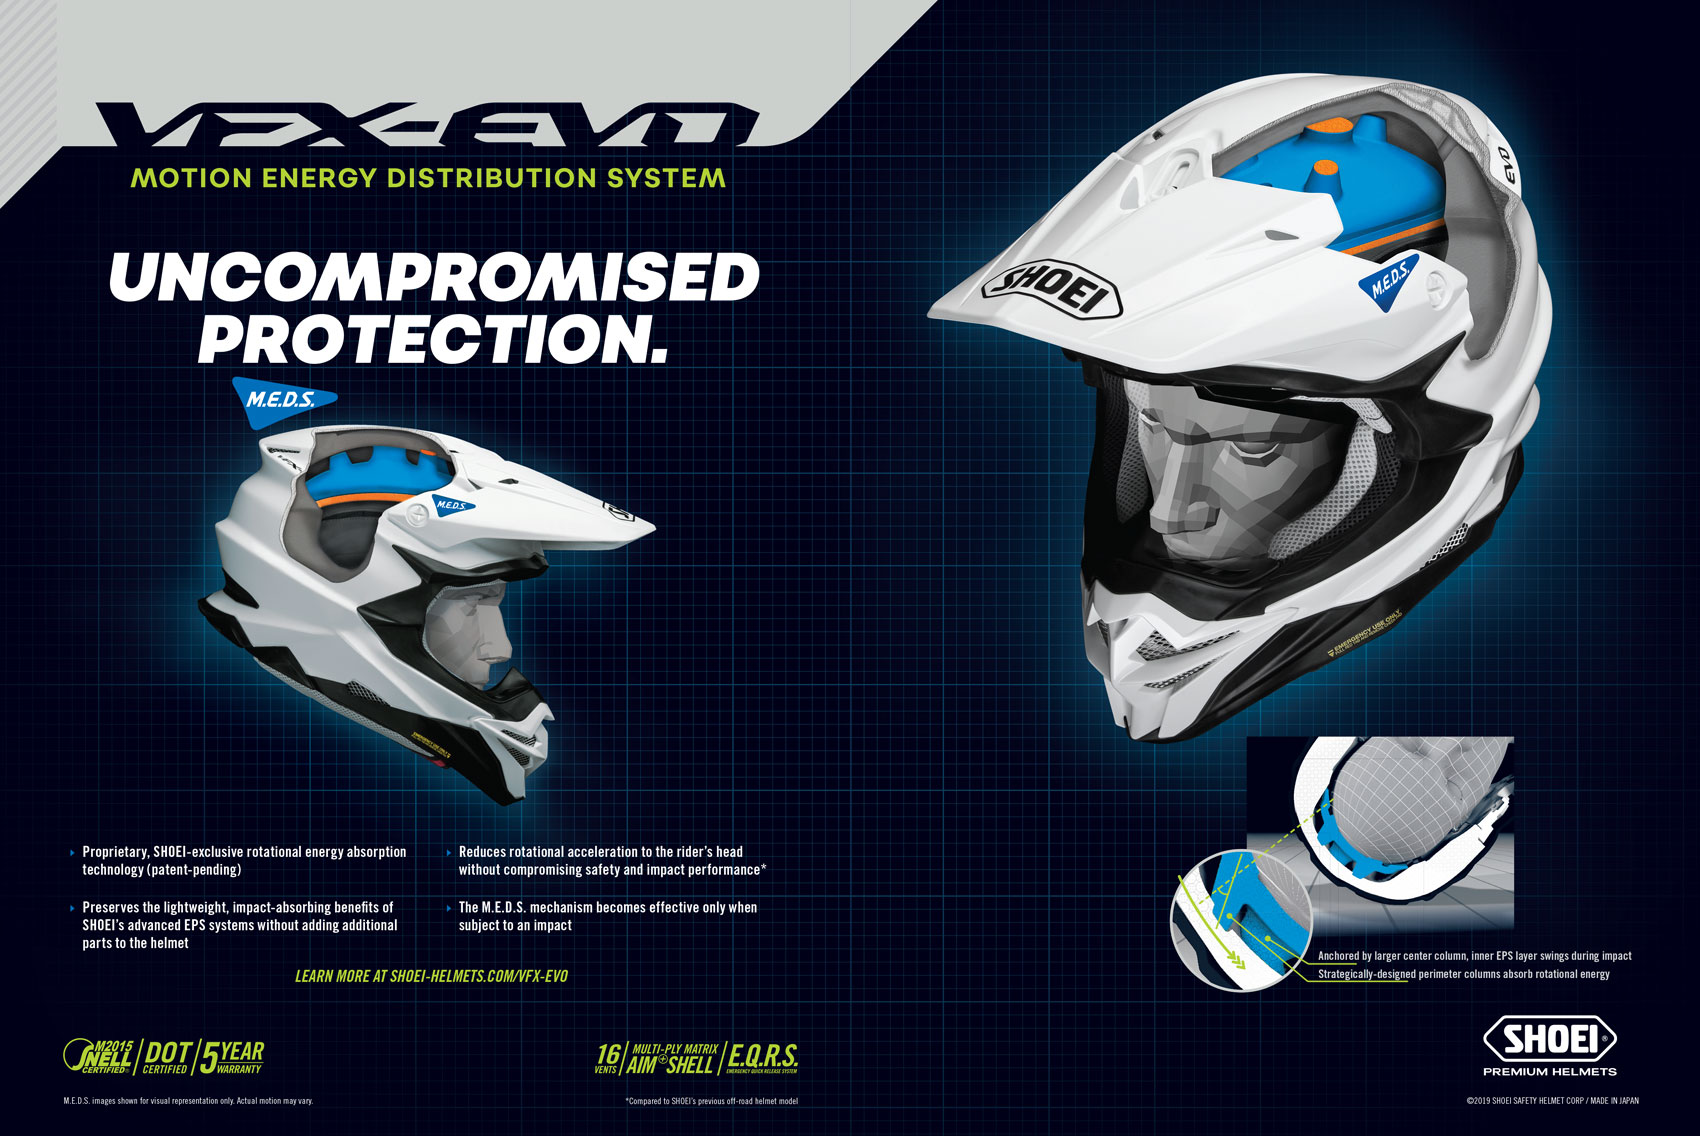 Racer X July 2019 - Shoei Helmets Advertisement